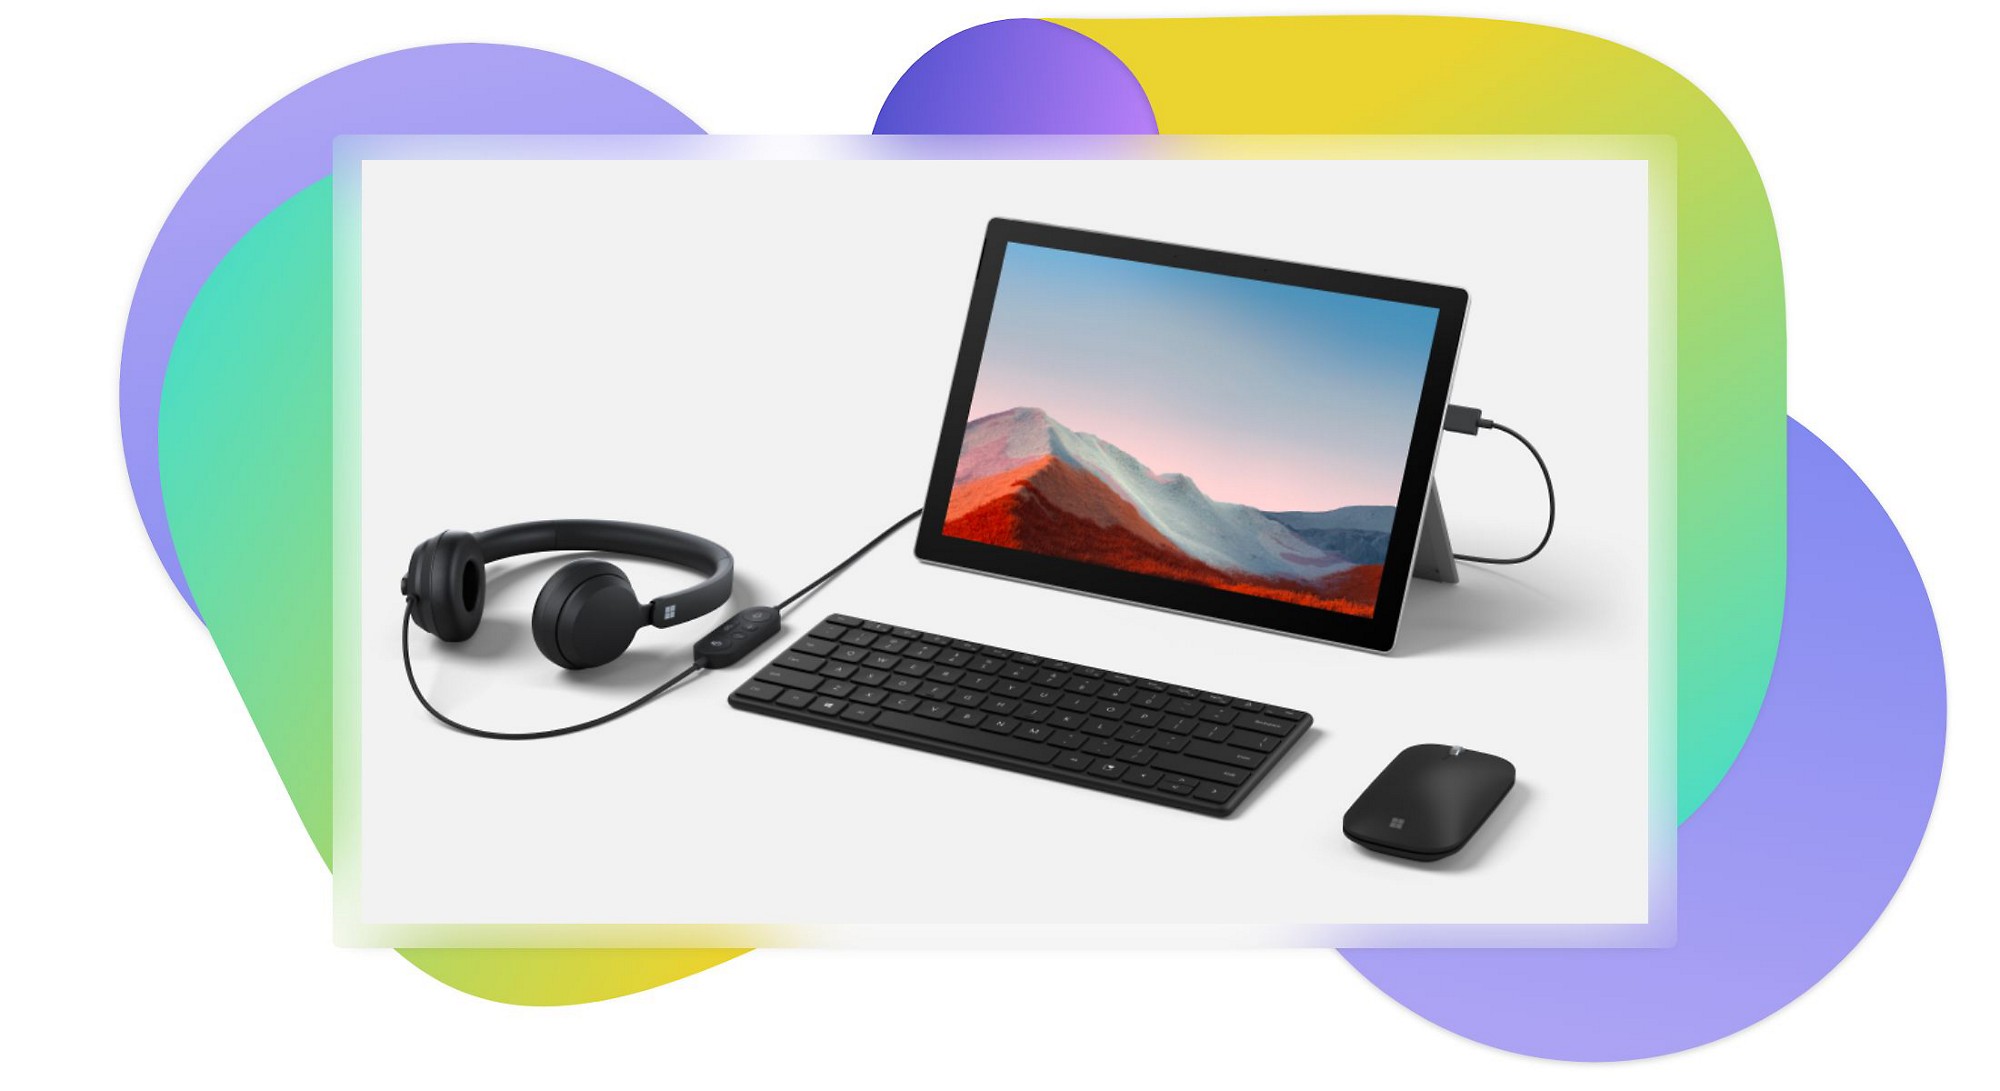 O tabletă stând pe un suport, o tastatură Bluetooth, o cască conectată la tabletă și un mouse Bluetooth.